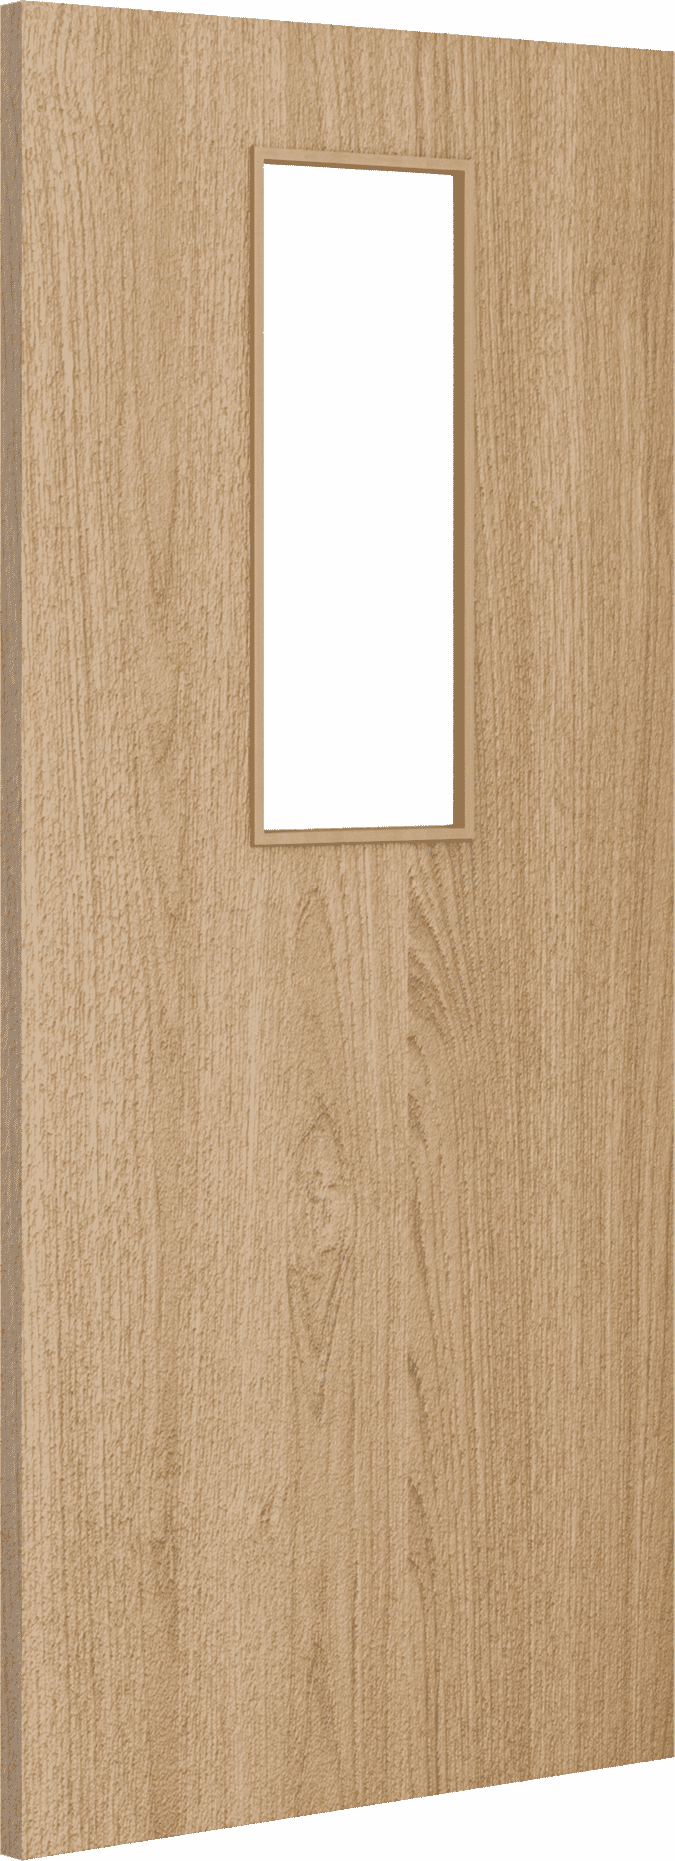 2040mm x 526mm x 44mm Architectural Oak 14 Clear Glazed - Prefinished FD30 Fire Door Blank